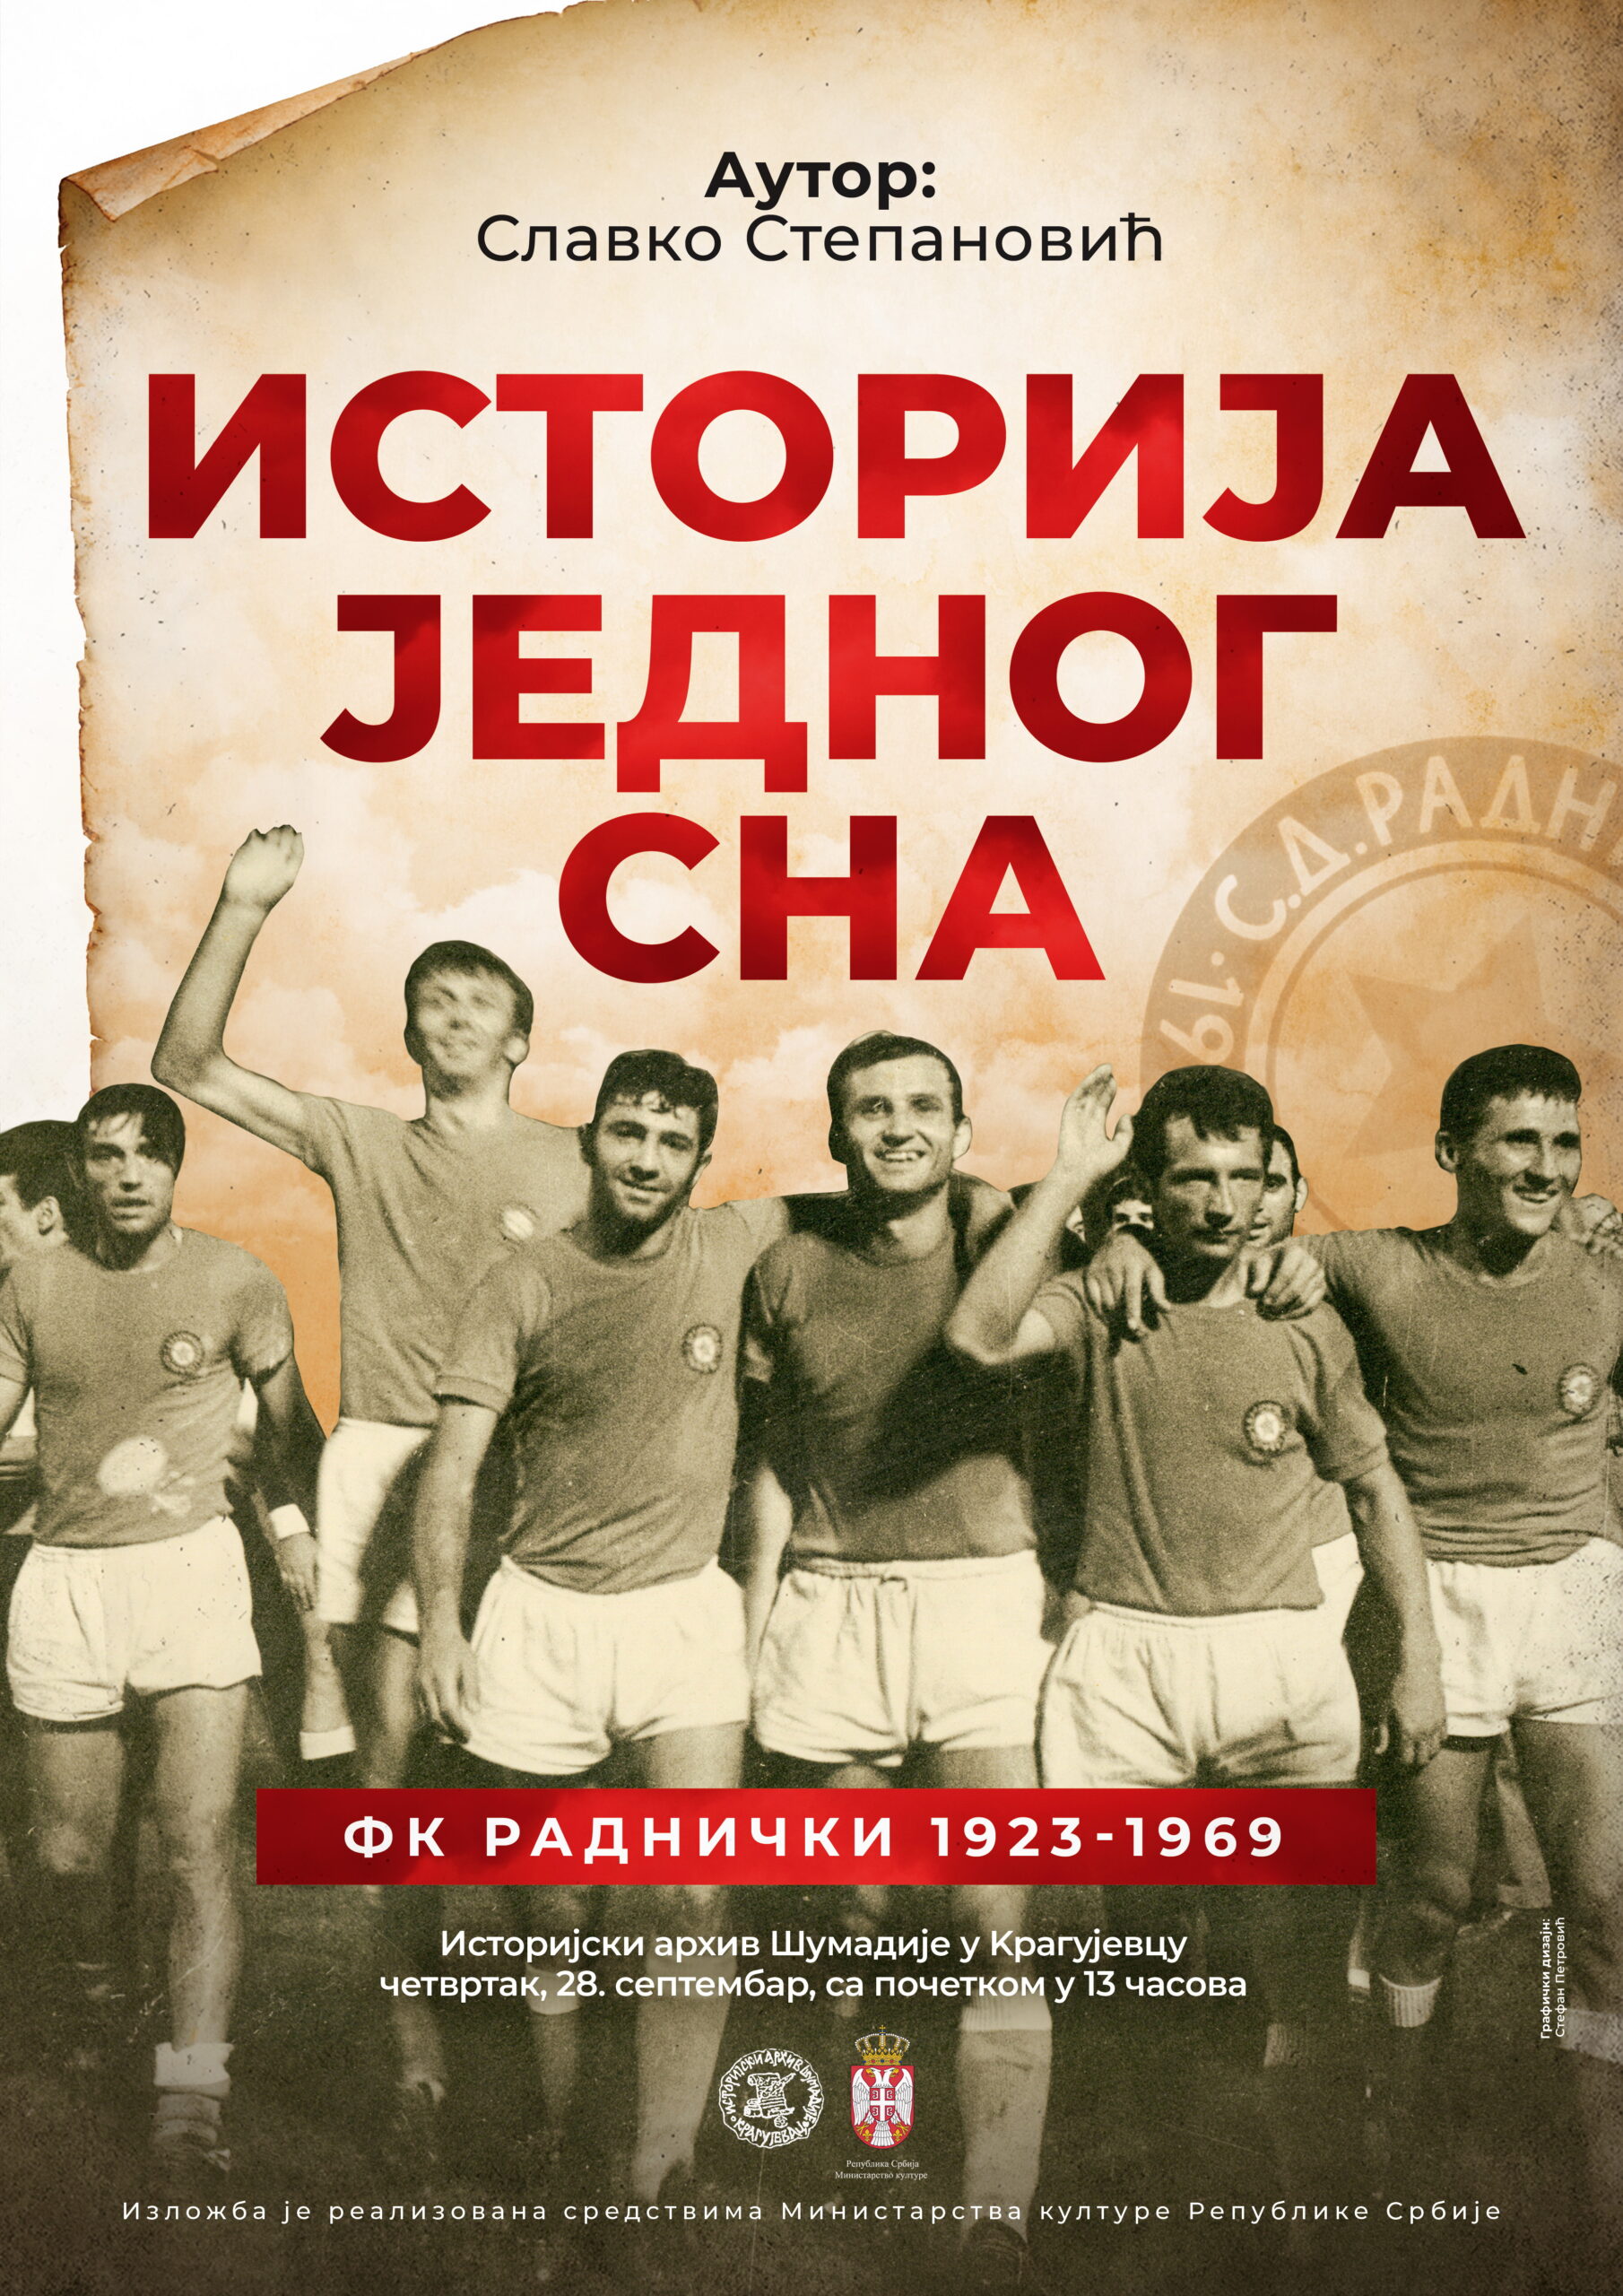 FK Radnicki 1923 - FK Smederevo 1924 predictions, tips and